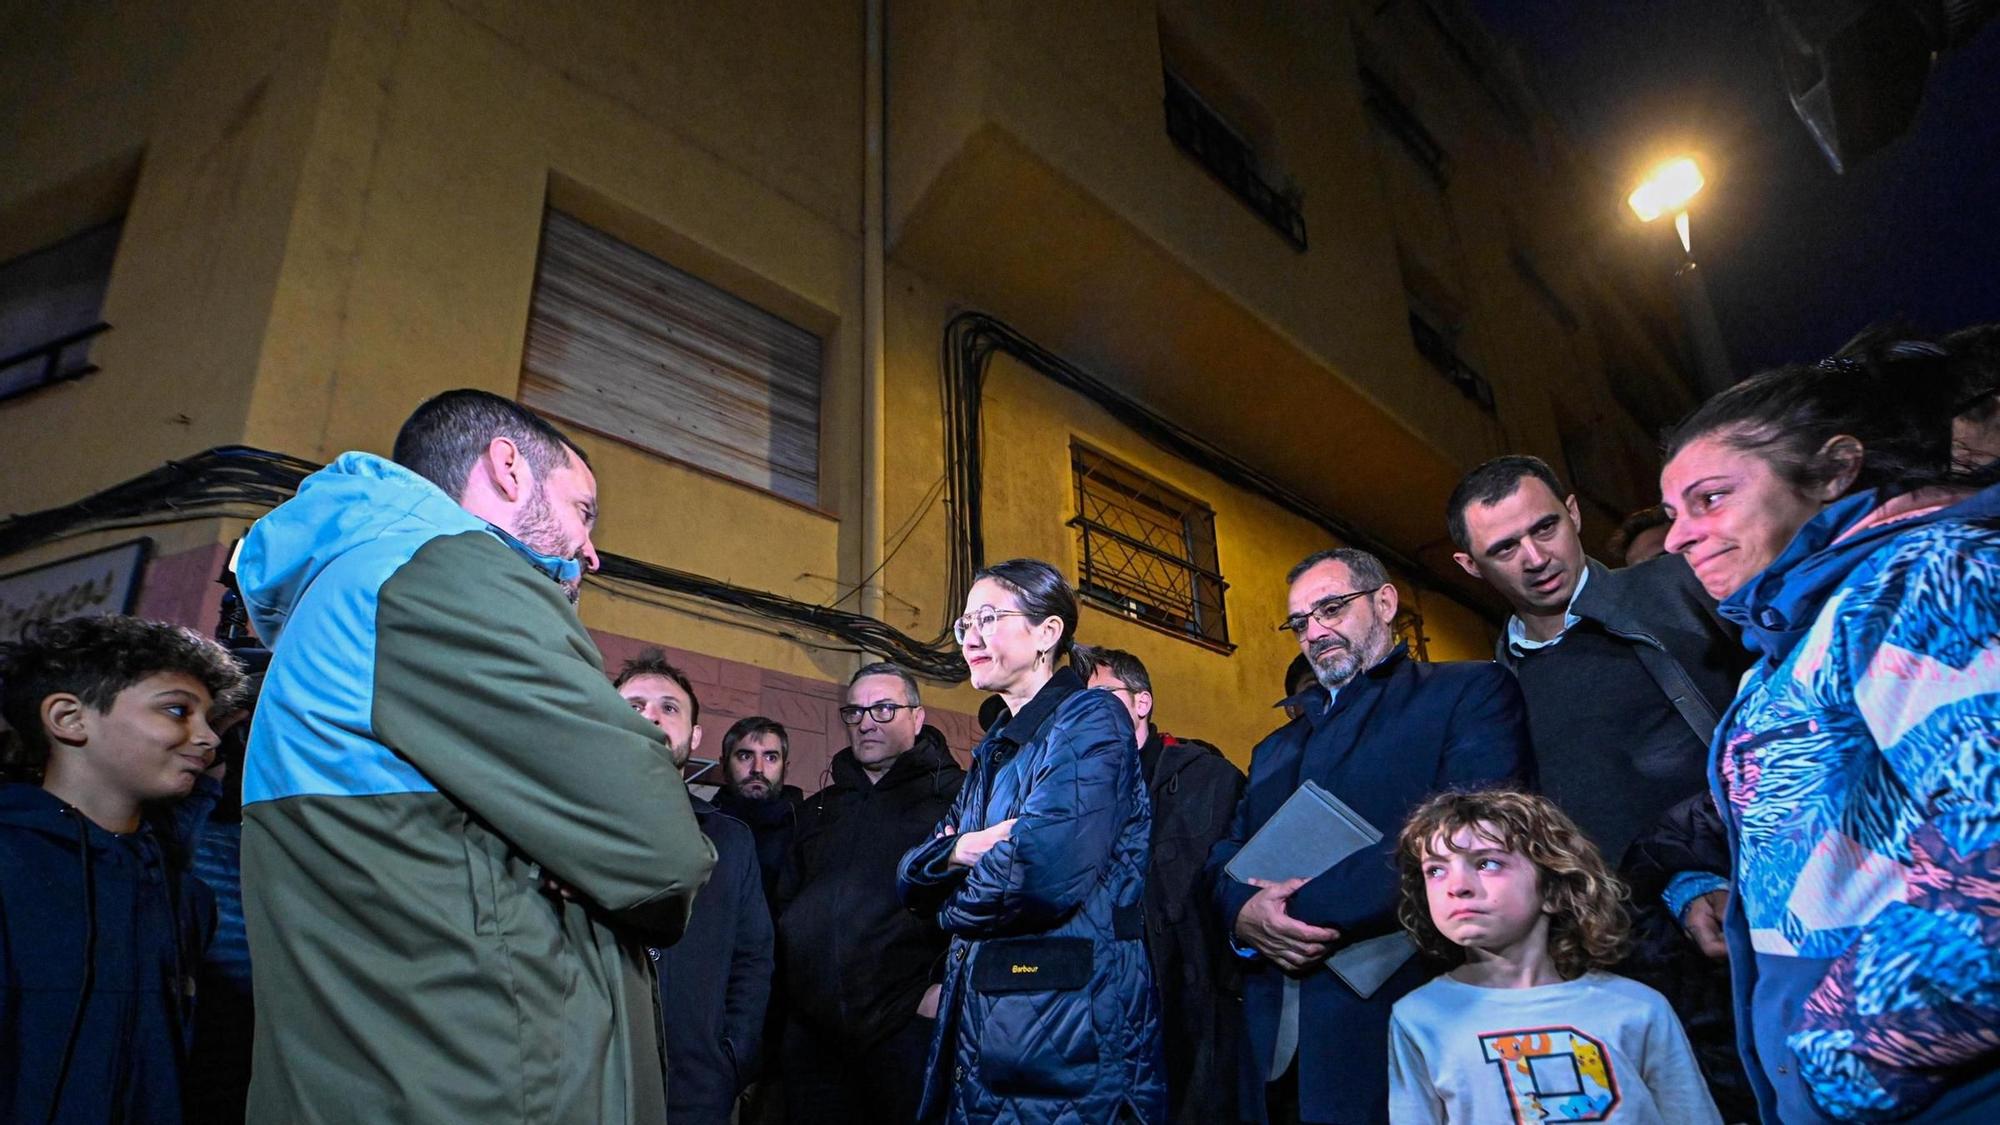 La alcaldesa Parlon da explicaciones ante los vecinos del edificio evacuado en Santa Coloma